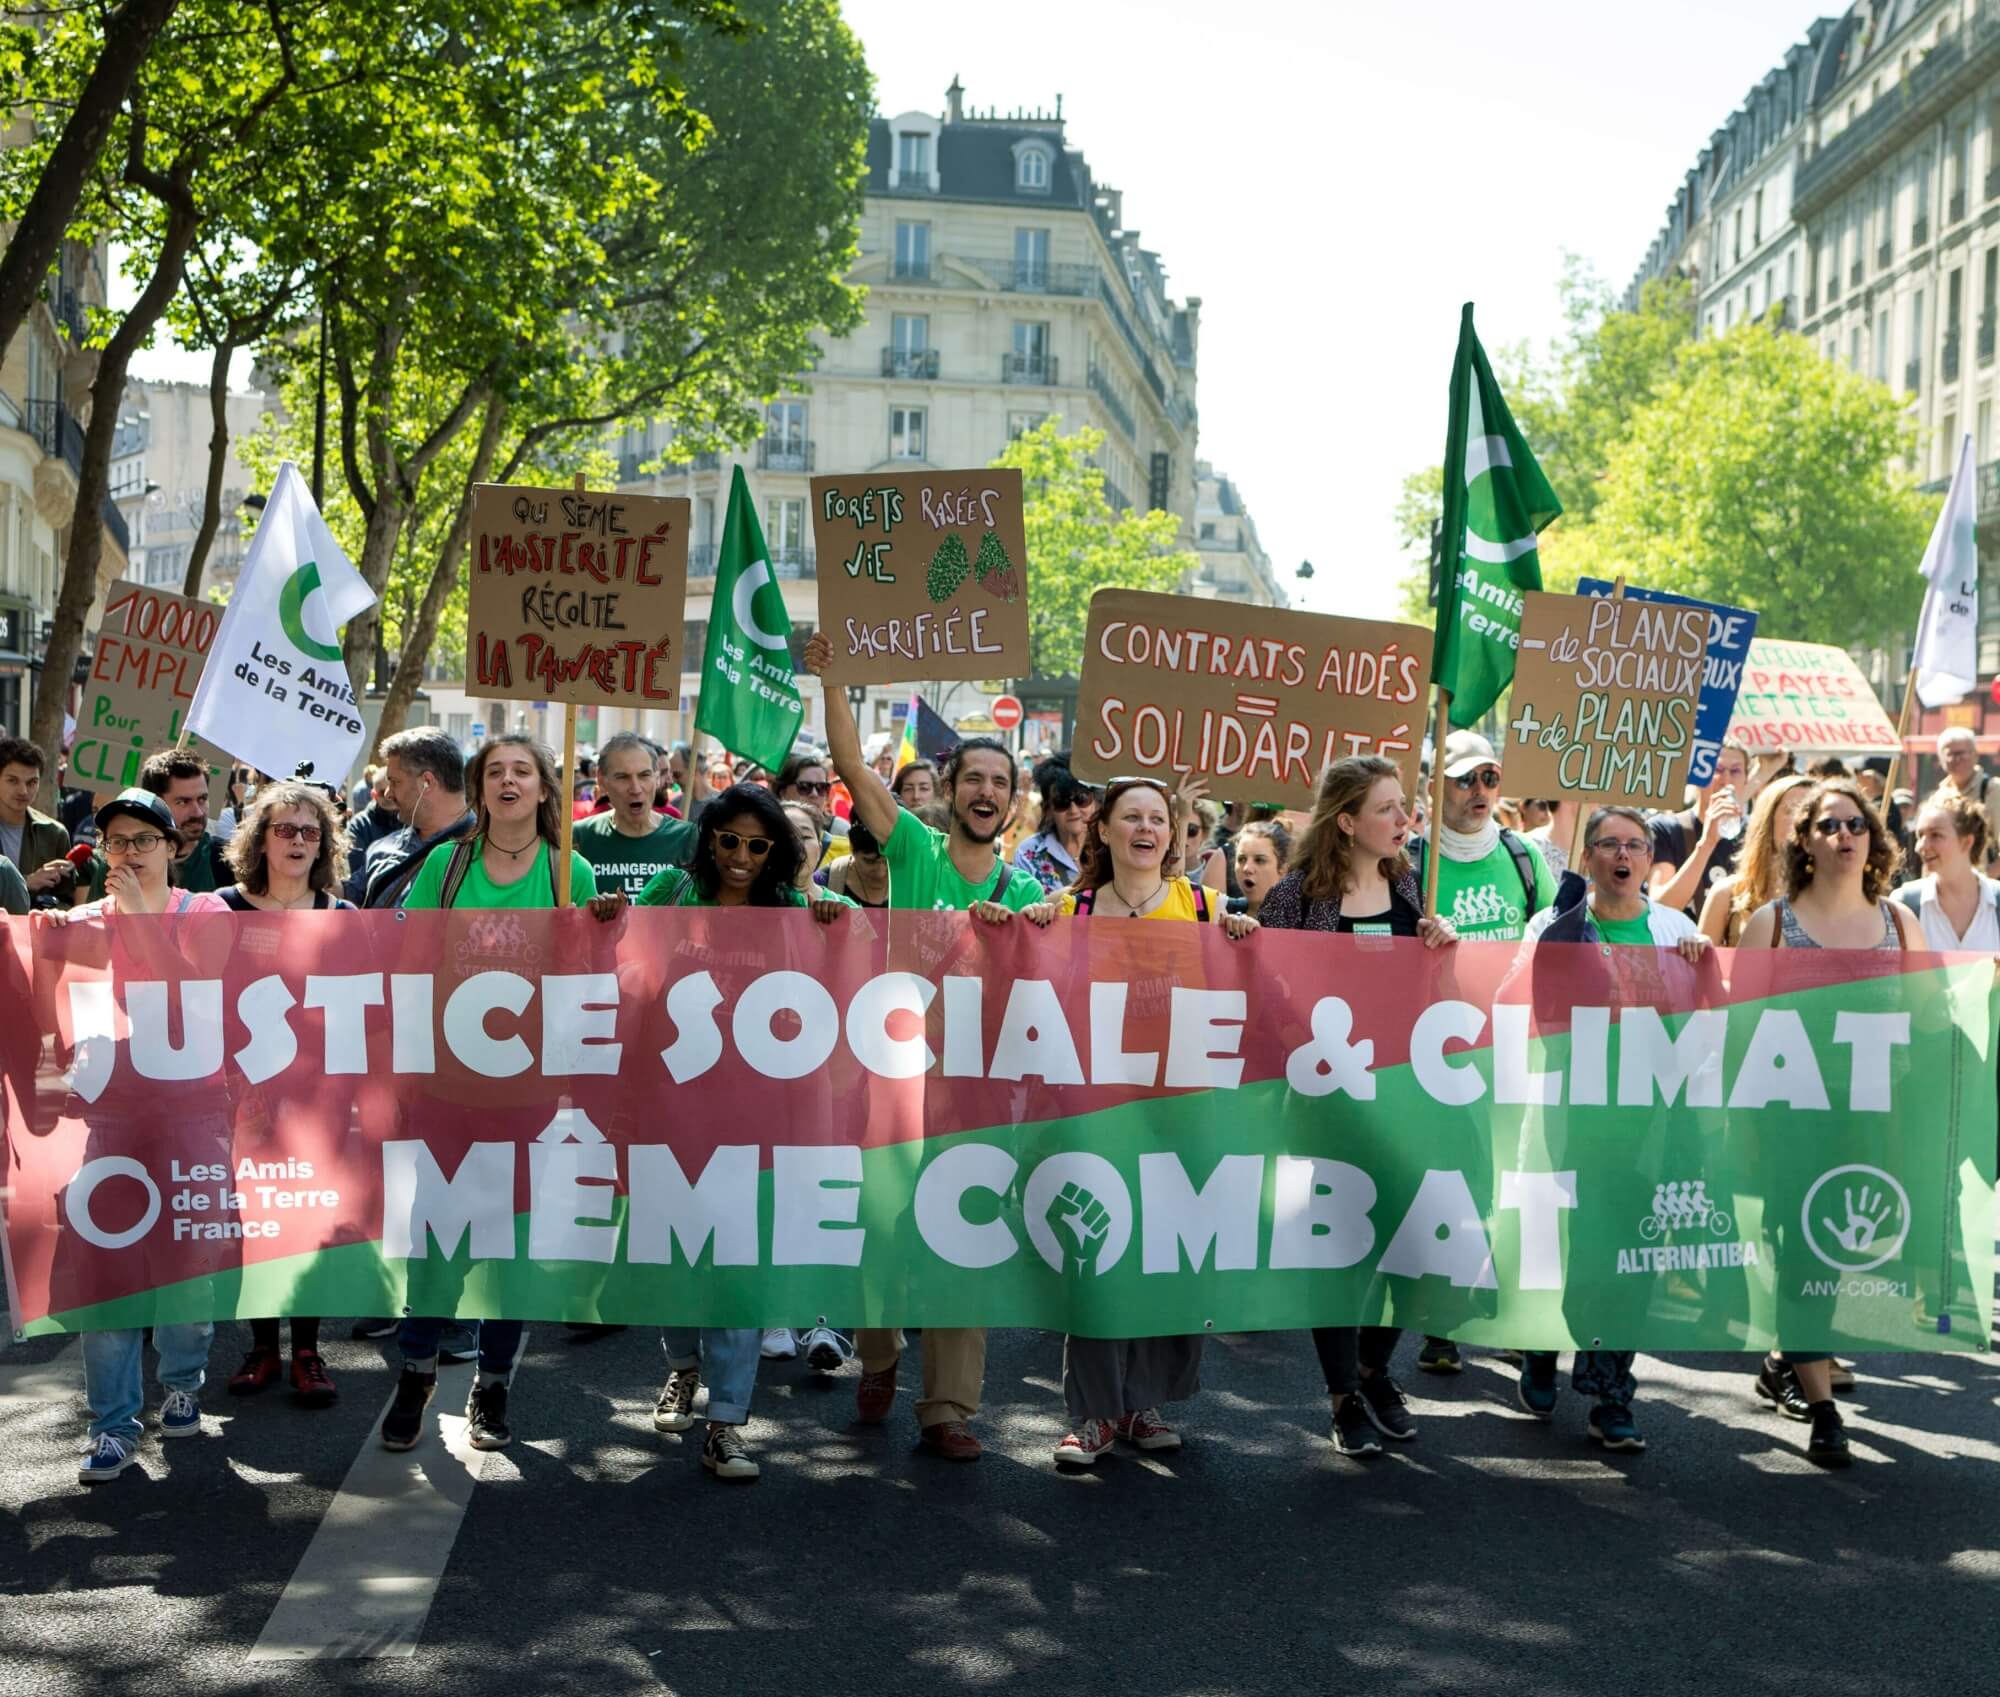 Bandeau de manifestation : Justice sociale & climat - même combat